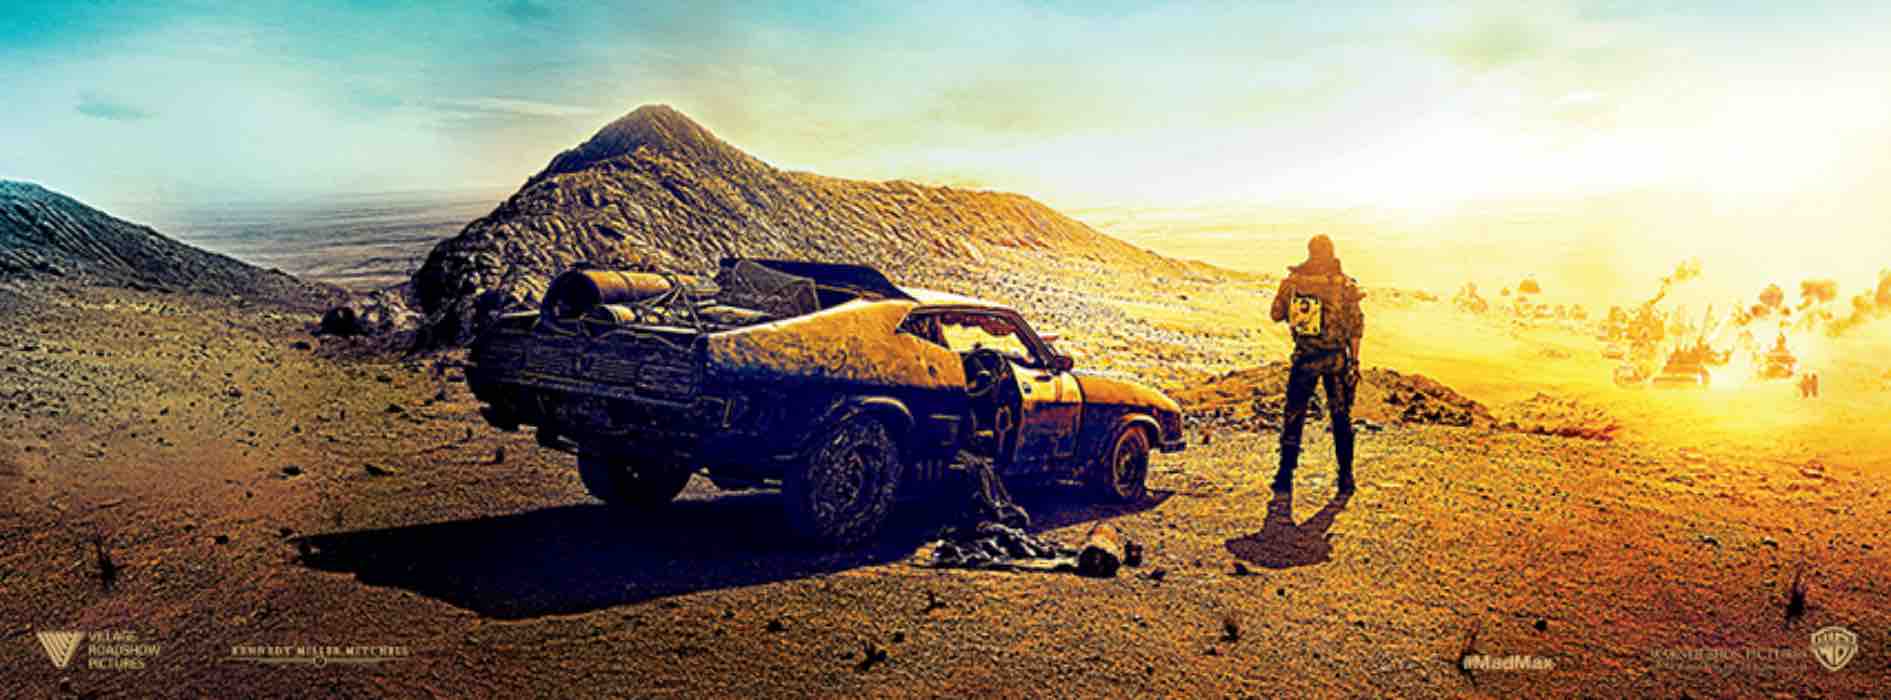 Mad Max: Fury Road, 10 curiosità sul film con Charlize Theron